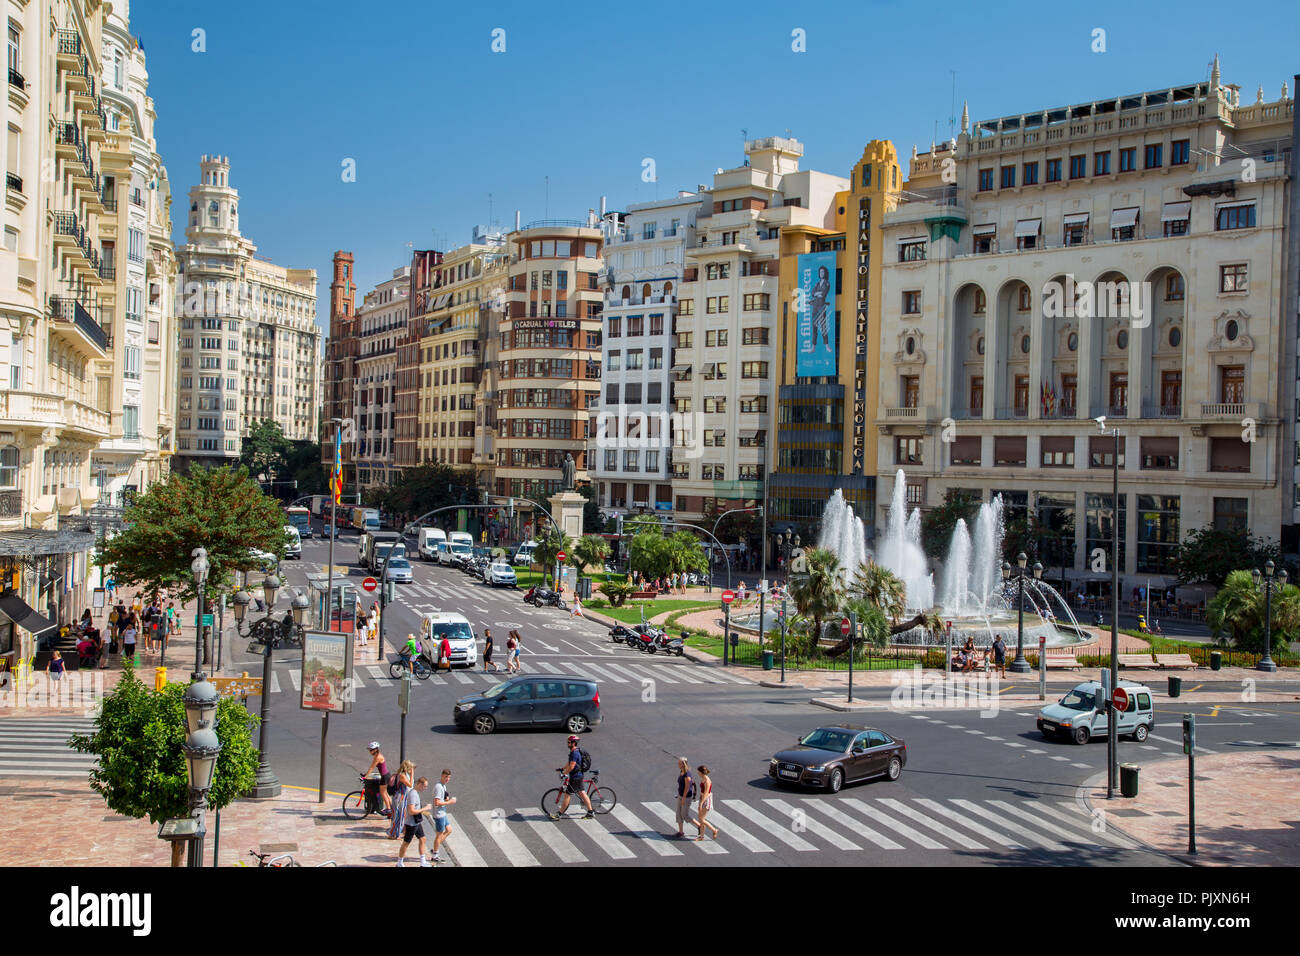 Plaza del Ayuntamiento, dem Platz vor dem Rathaus im Stadtzentrum von Valencia, Spanien Stockfoto